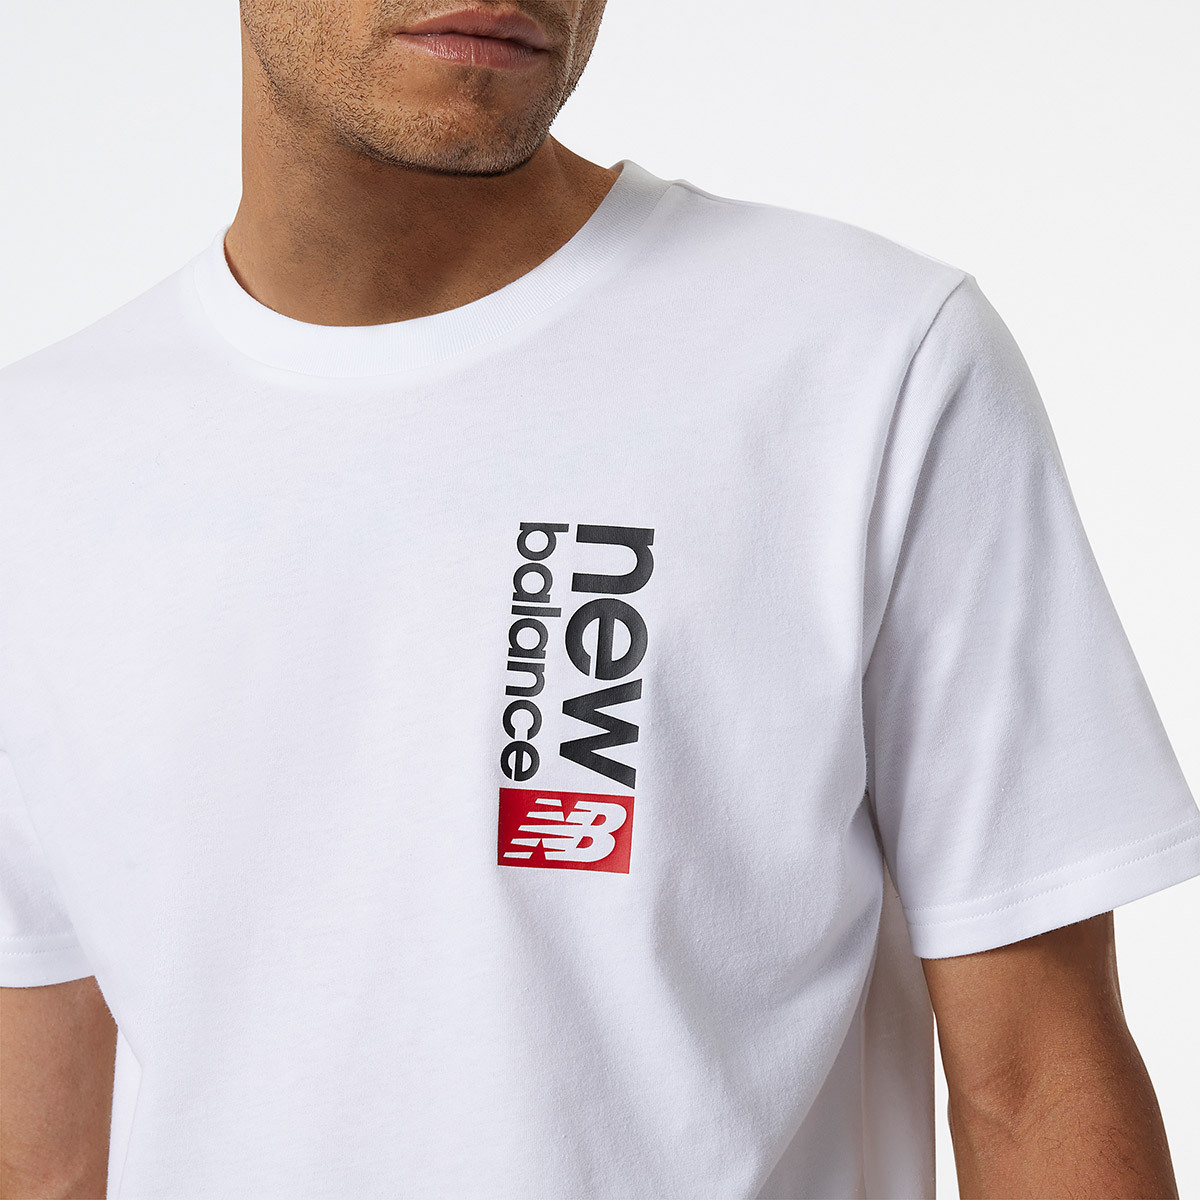 뉴발란스 남성 반소매 티셔츠 - 화이트, L